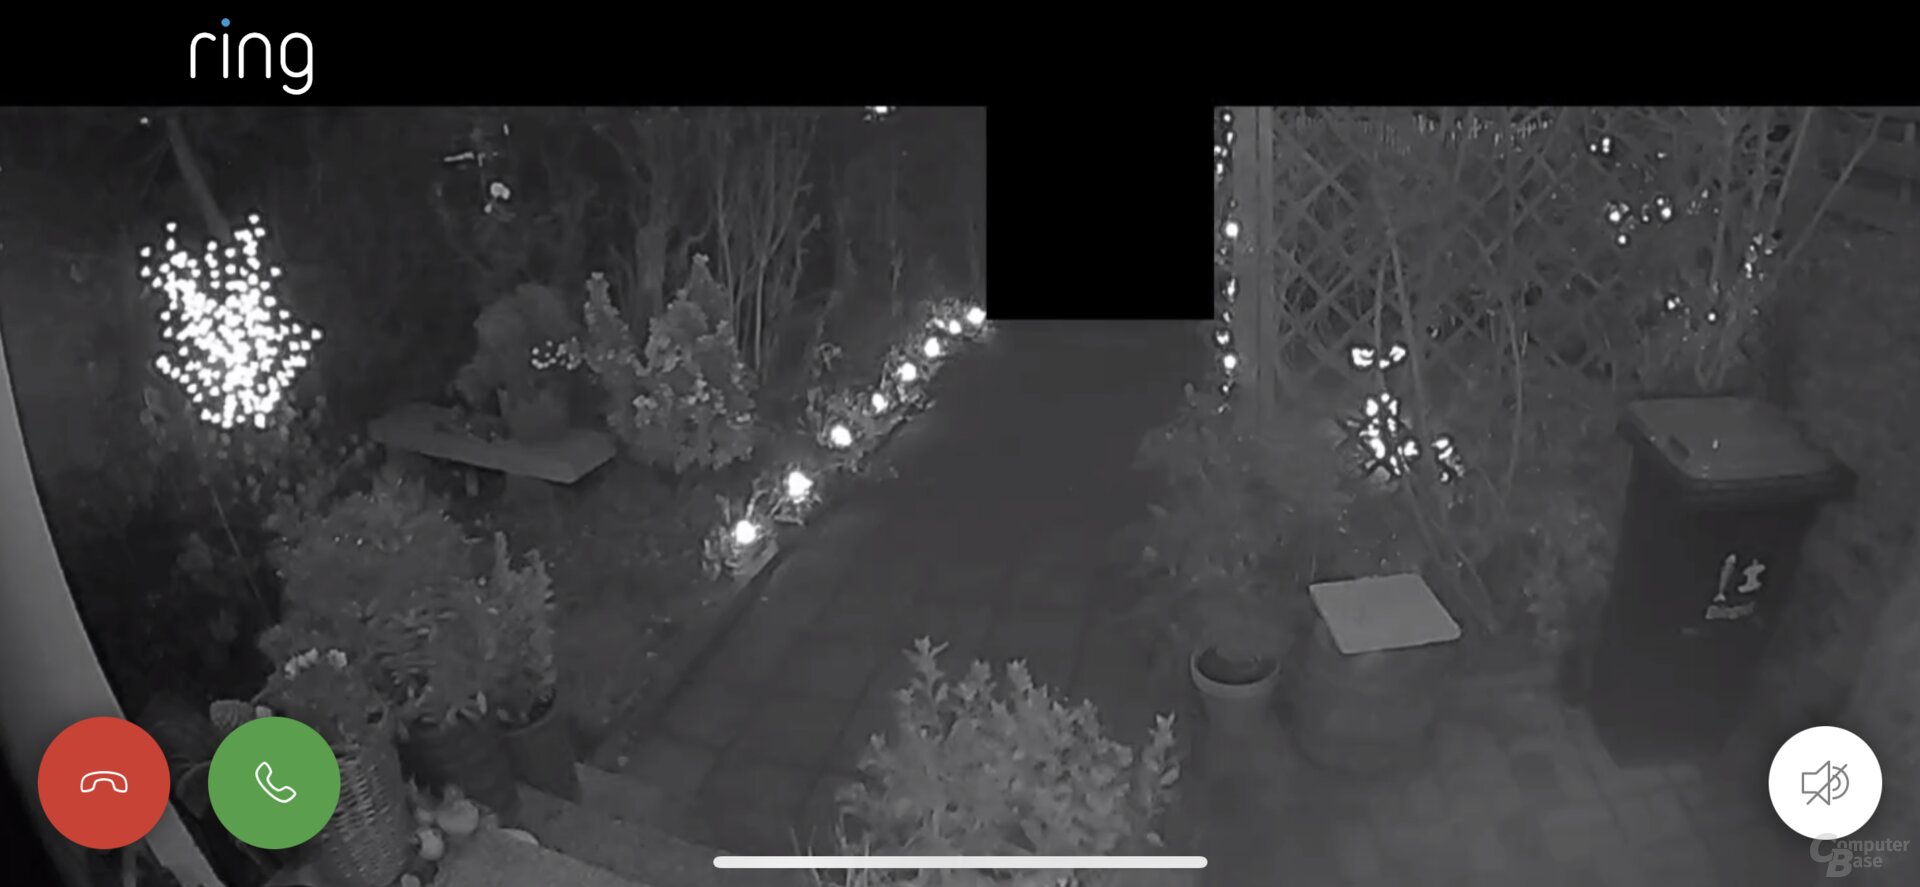 Nachtsicht mit der Ring Video Doorbell 3 Plus (vergrößert)